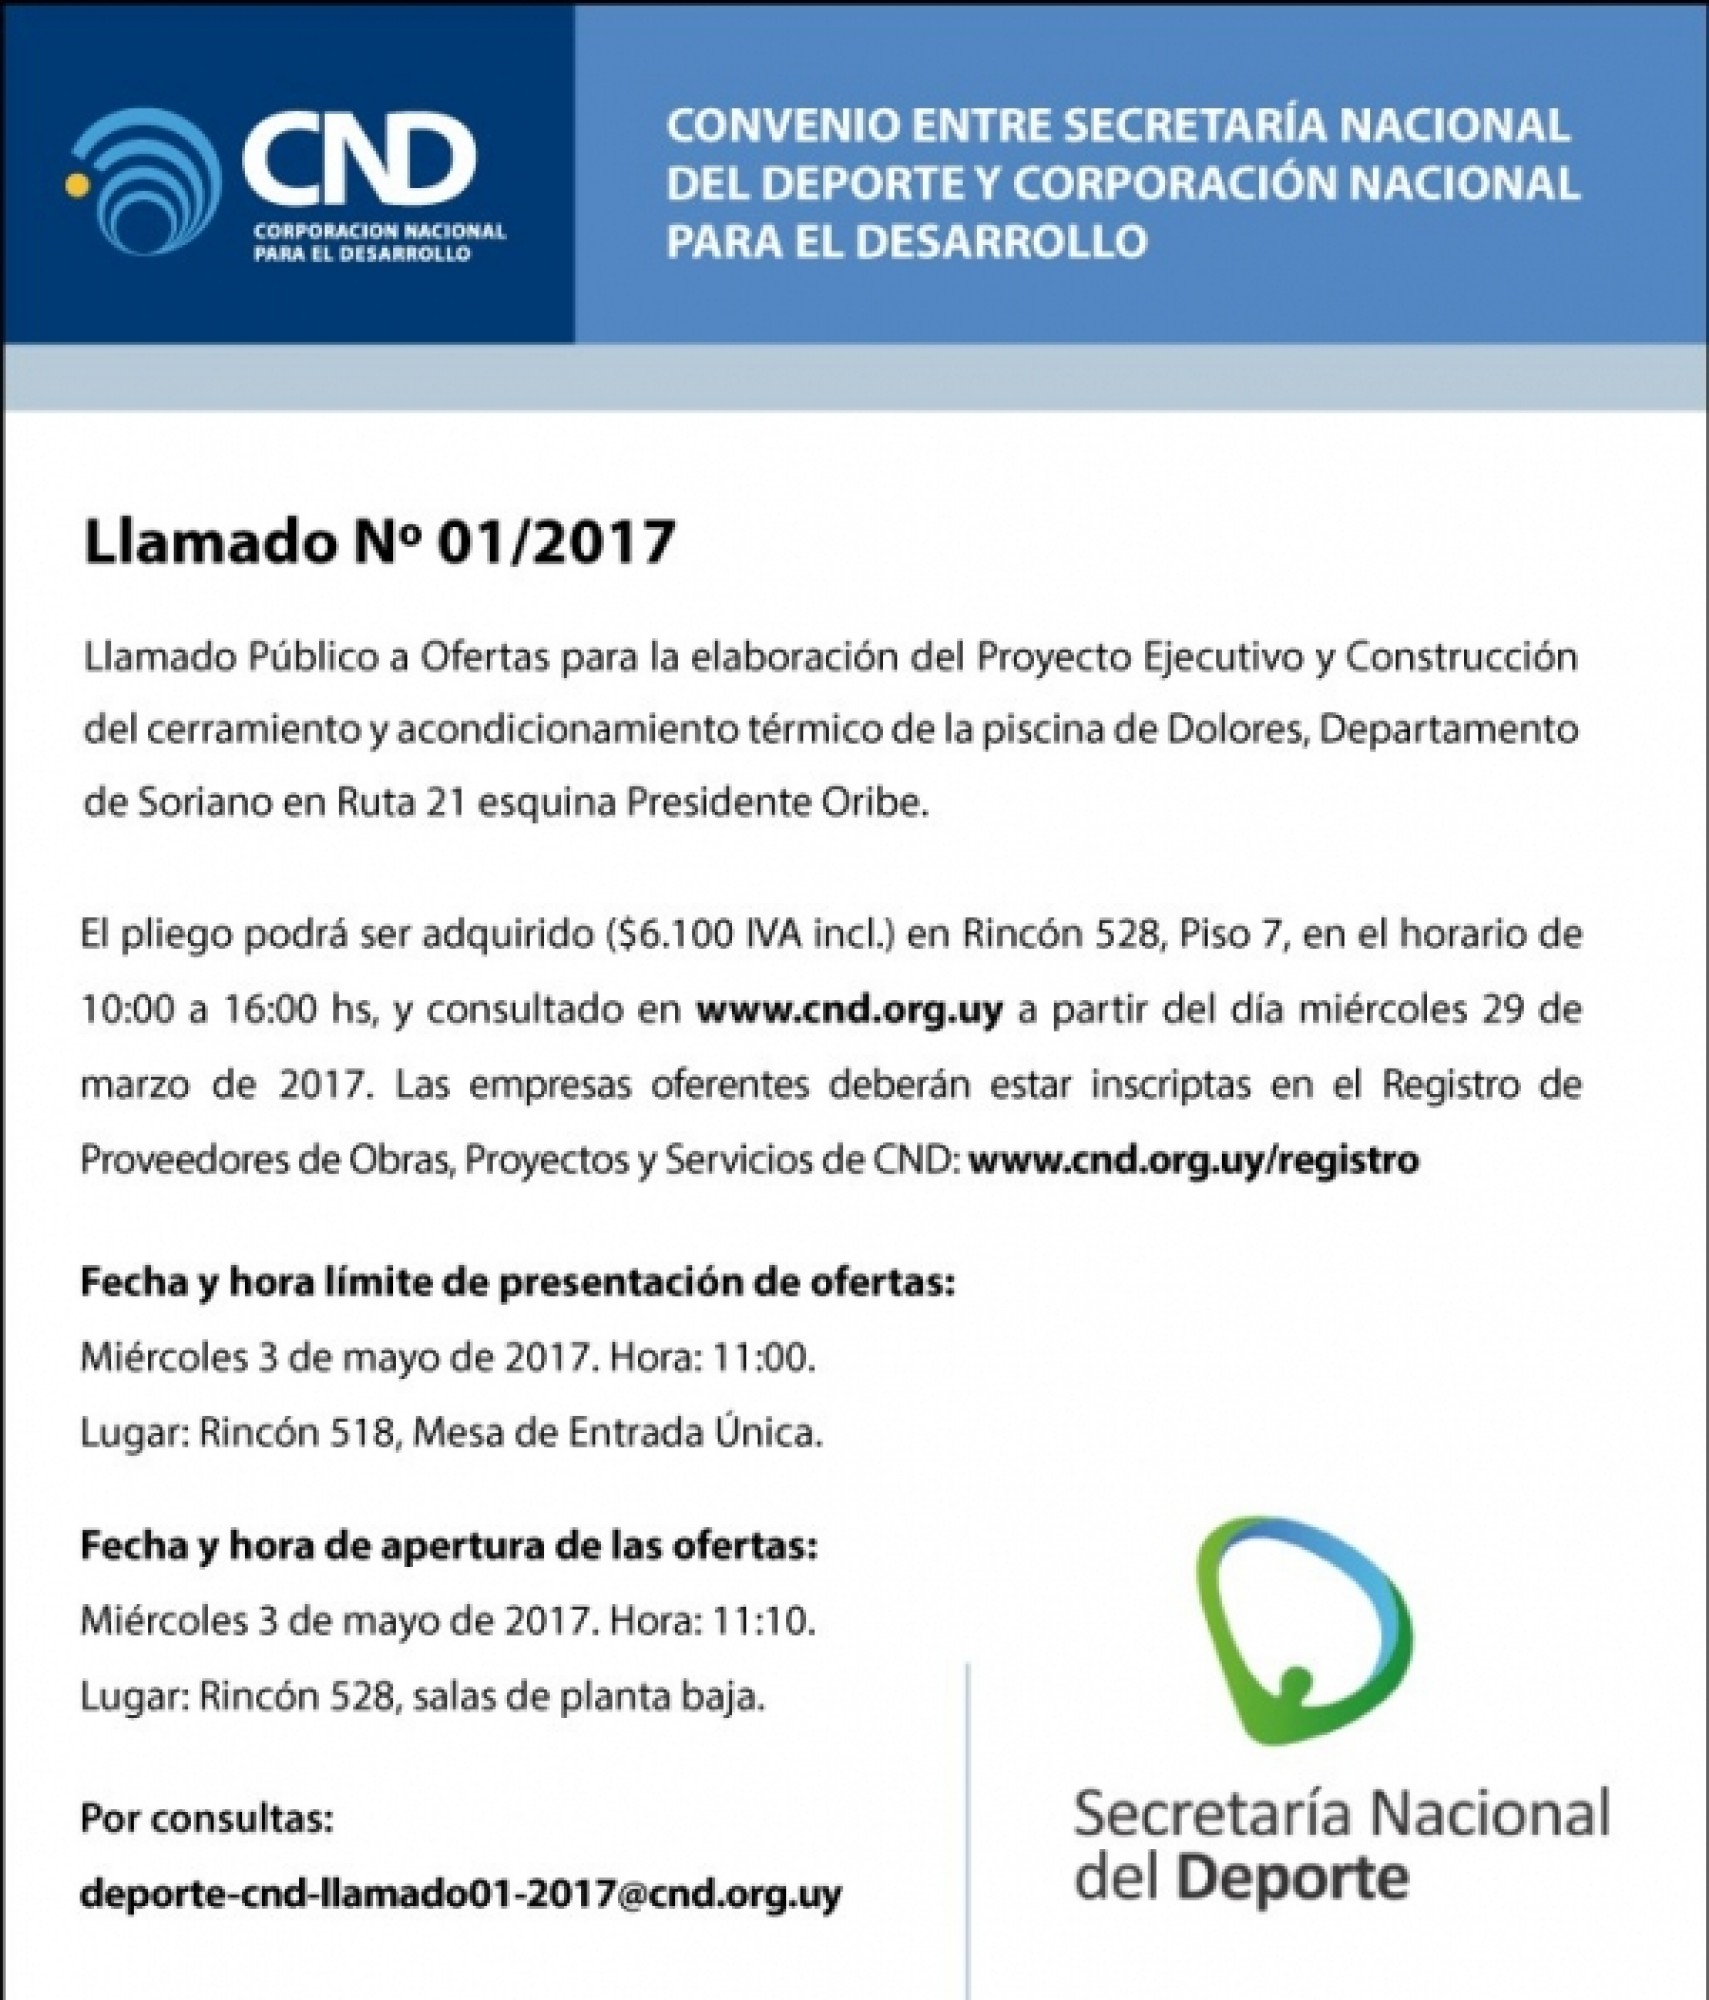 Llamado 01/2017 Convenio Secretaría Nacional del Deporte - CND